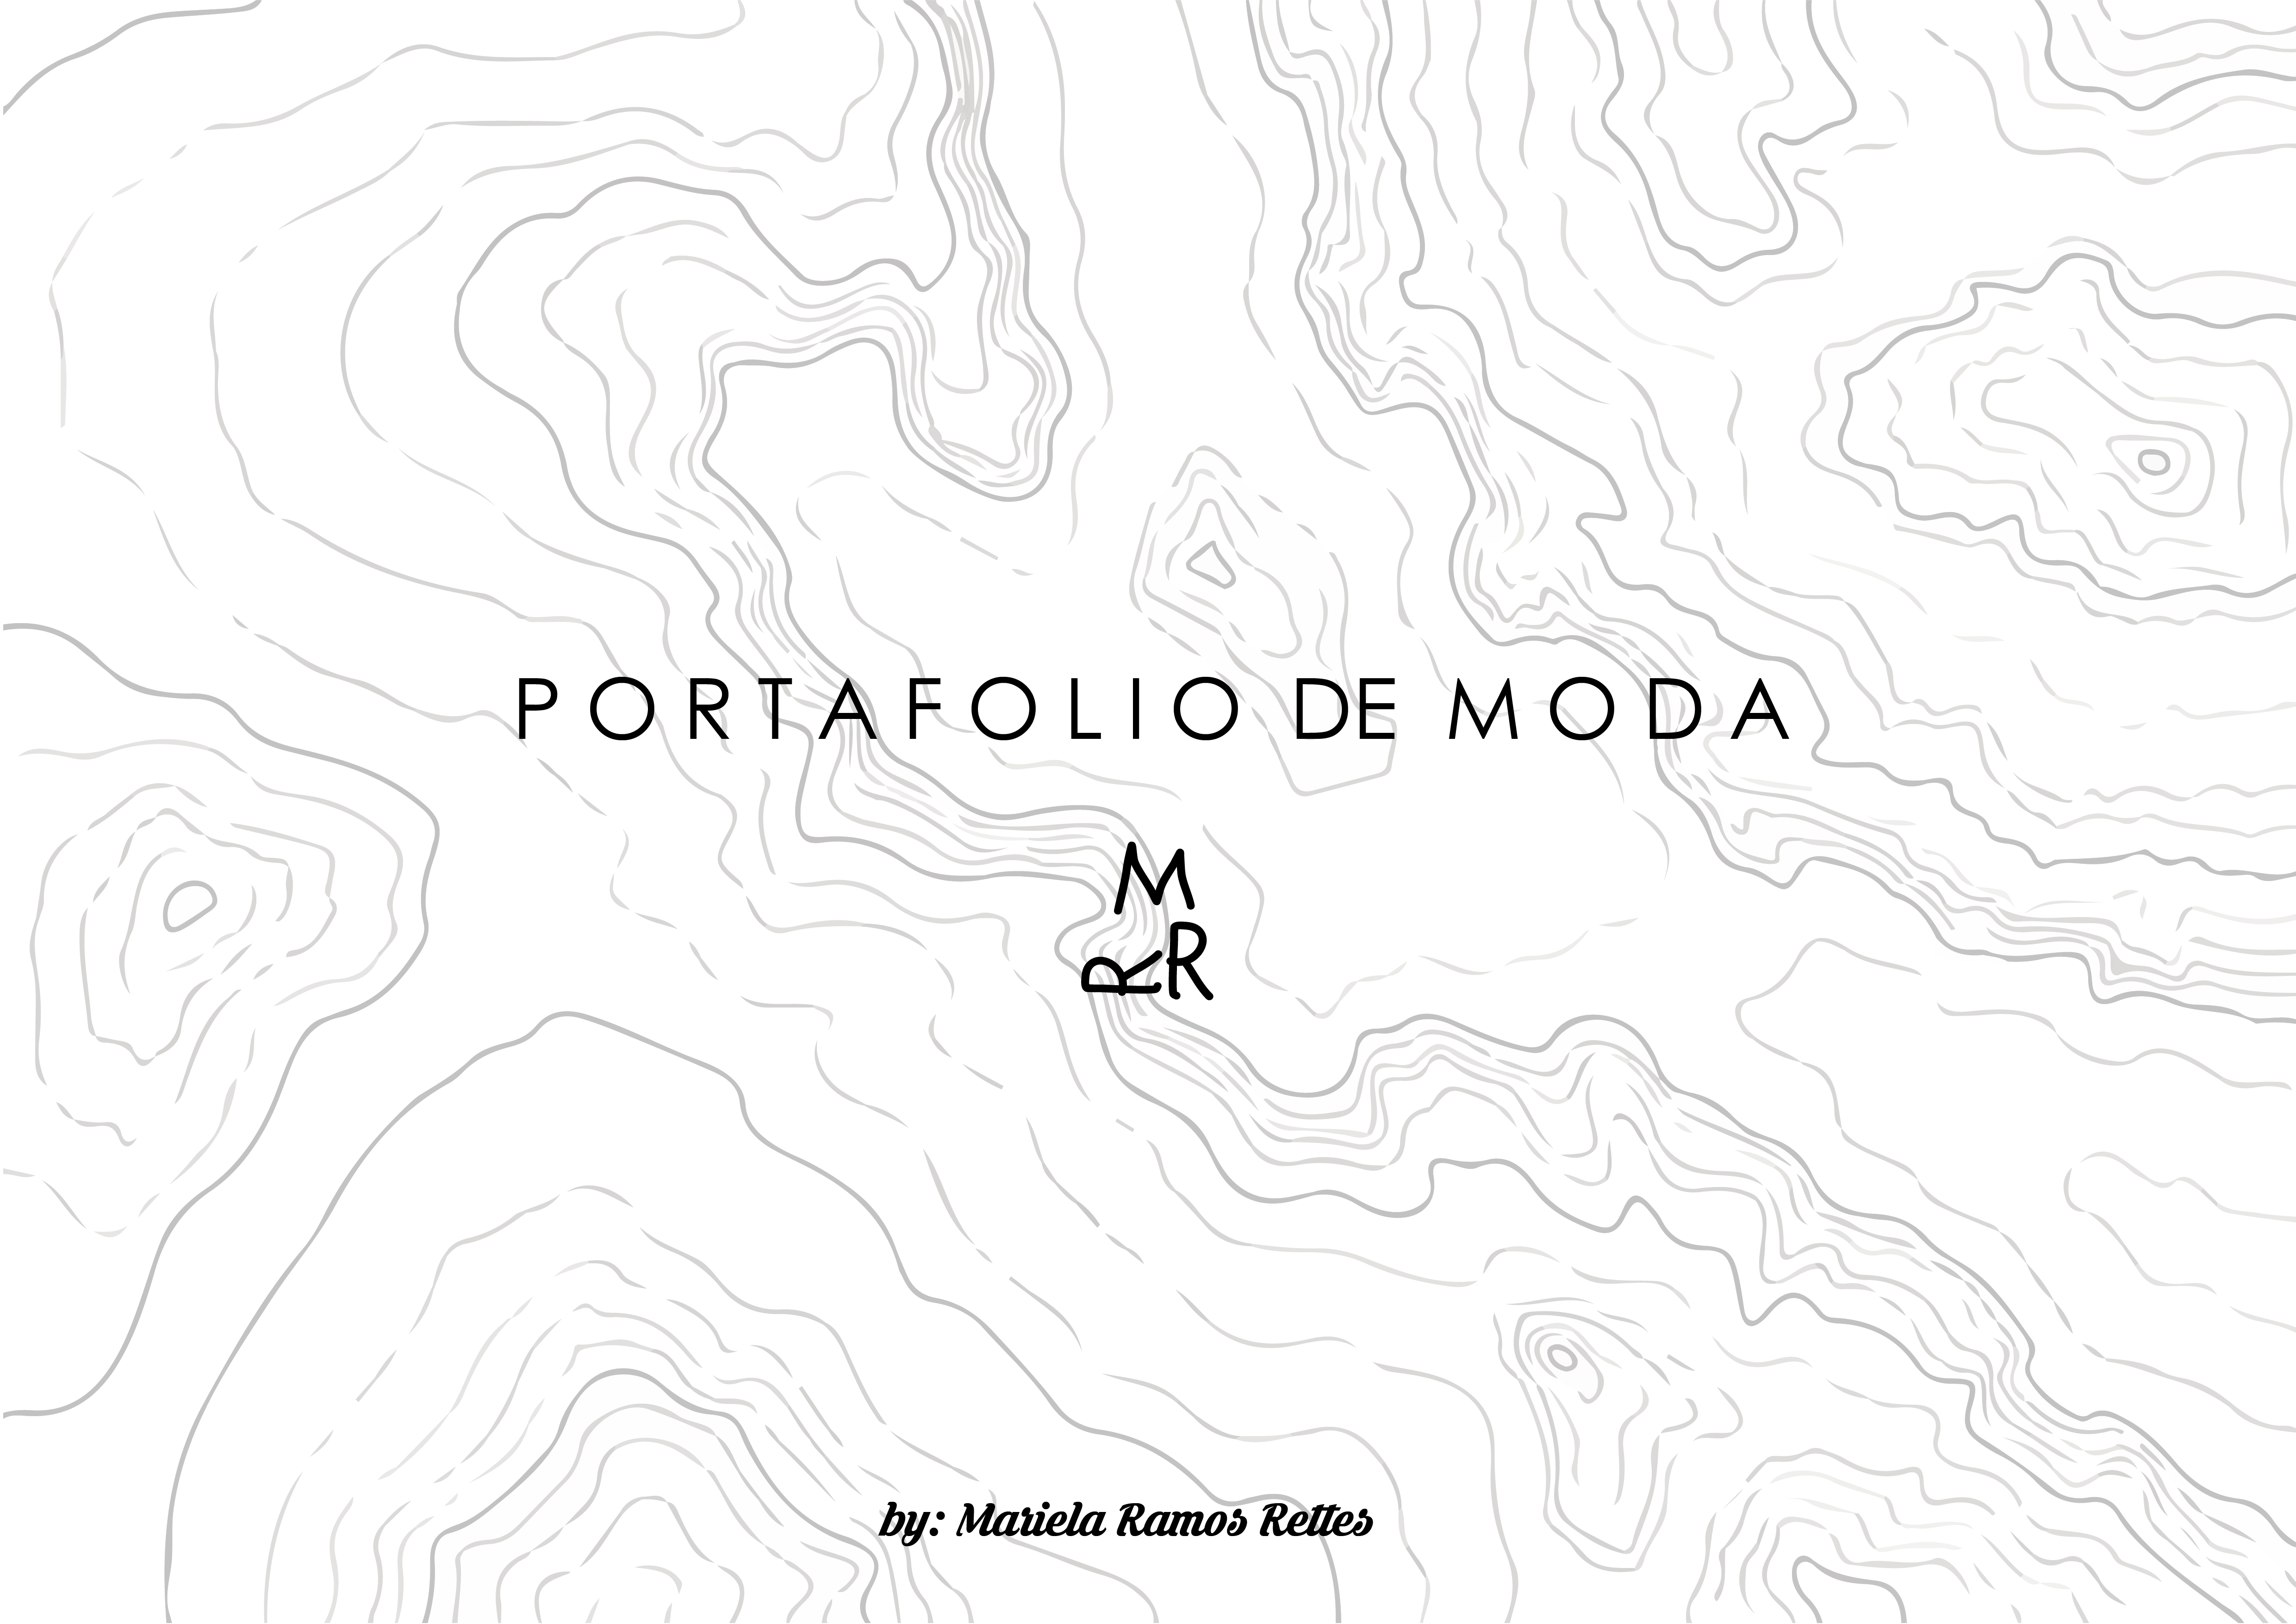 PORTAFOLIO DE MOD A

M
aR

by: Matiela Ramos Relles